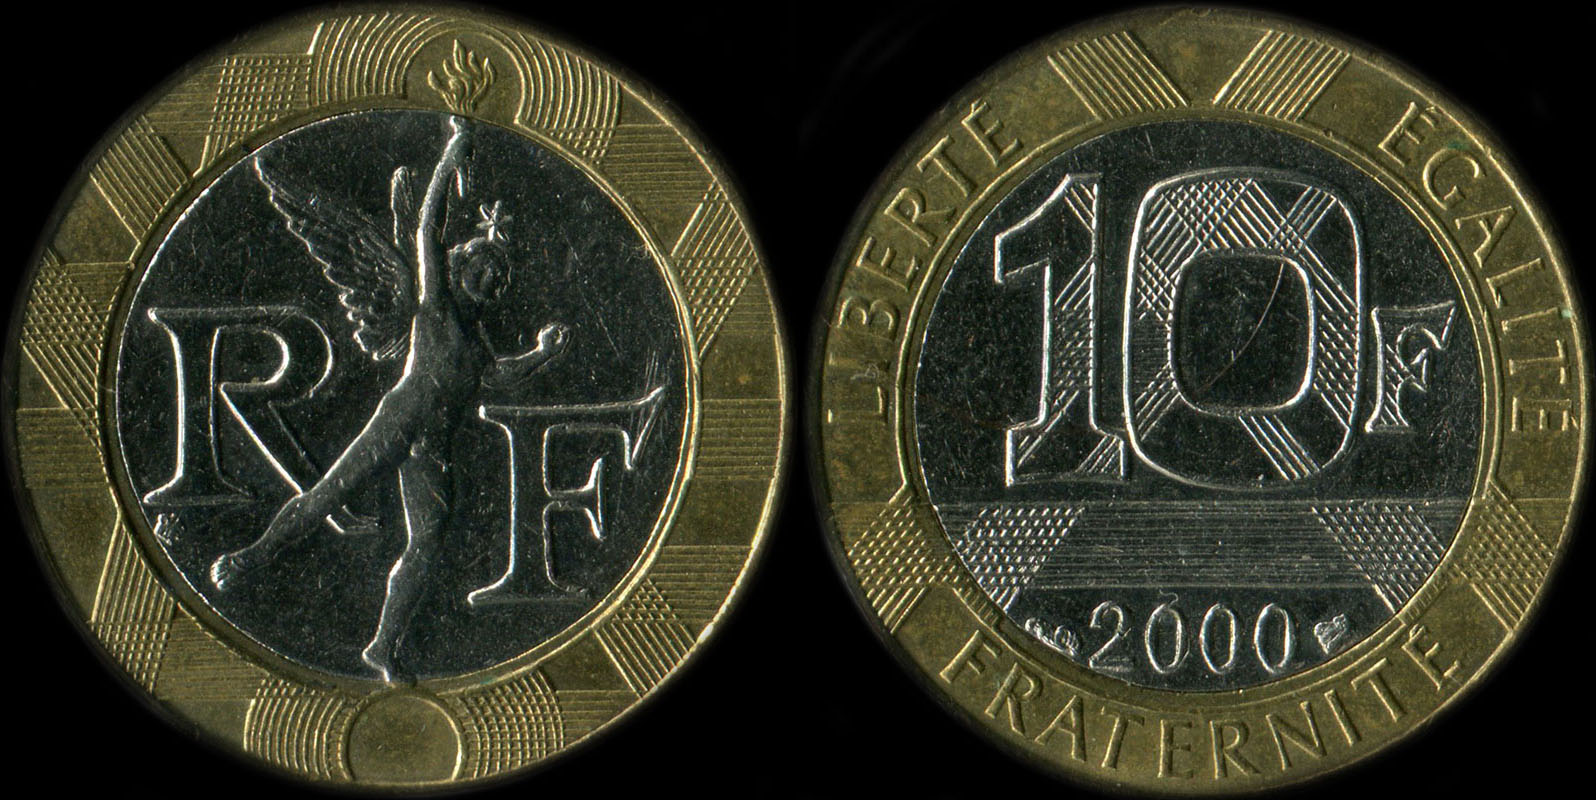 Pice de 10 francs Gnie 2000 diffrent de Pessac touche le cercle